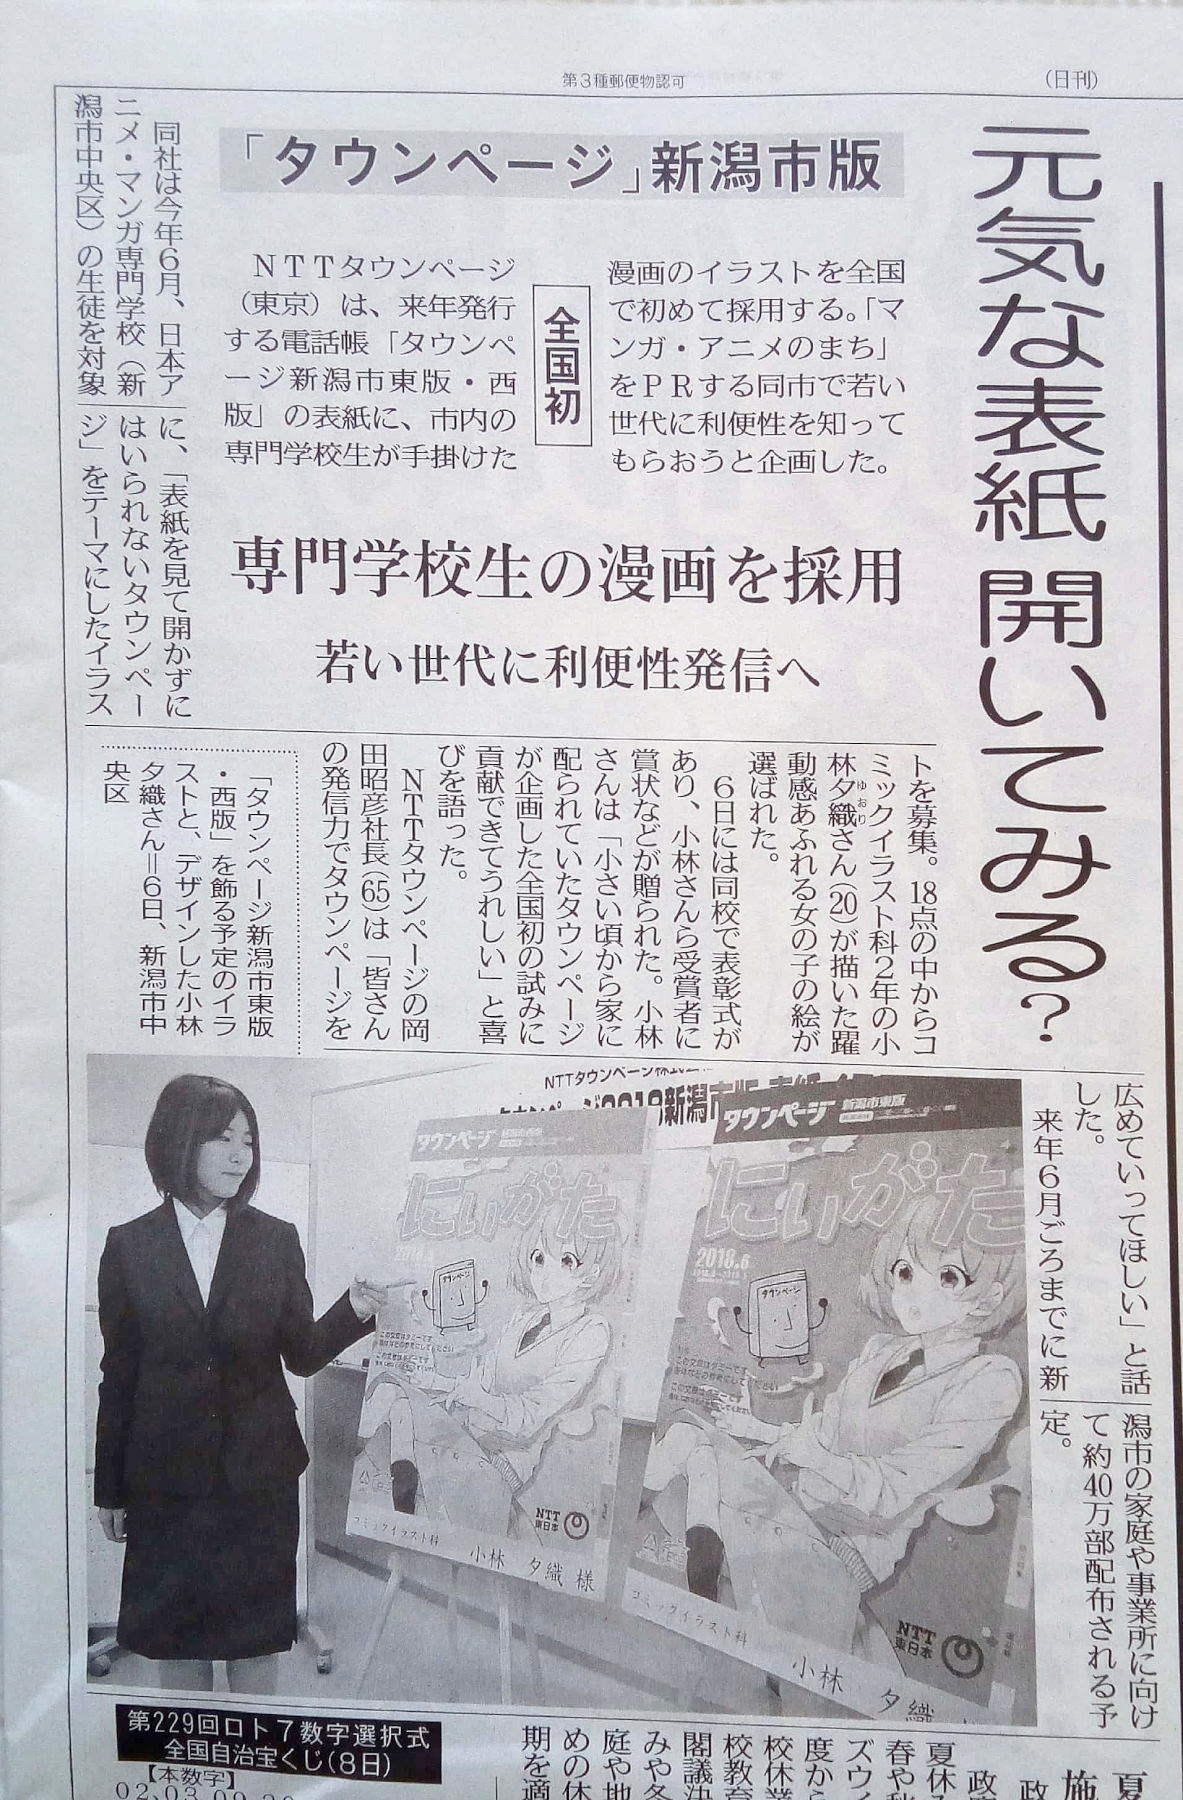 神崎のナナメ読み 全国初 来年の Nttタウンページ新潟市版 の表紙は 漫画のイラストを採用